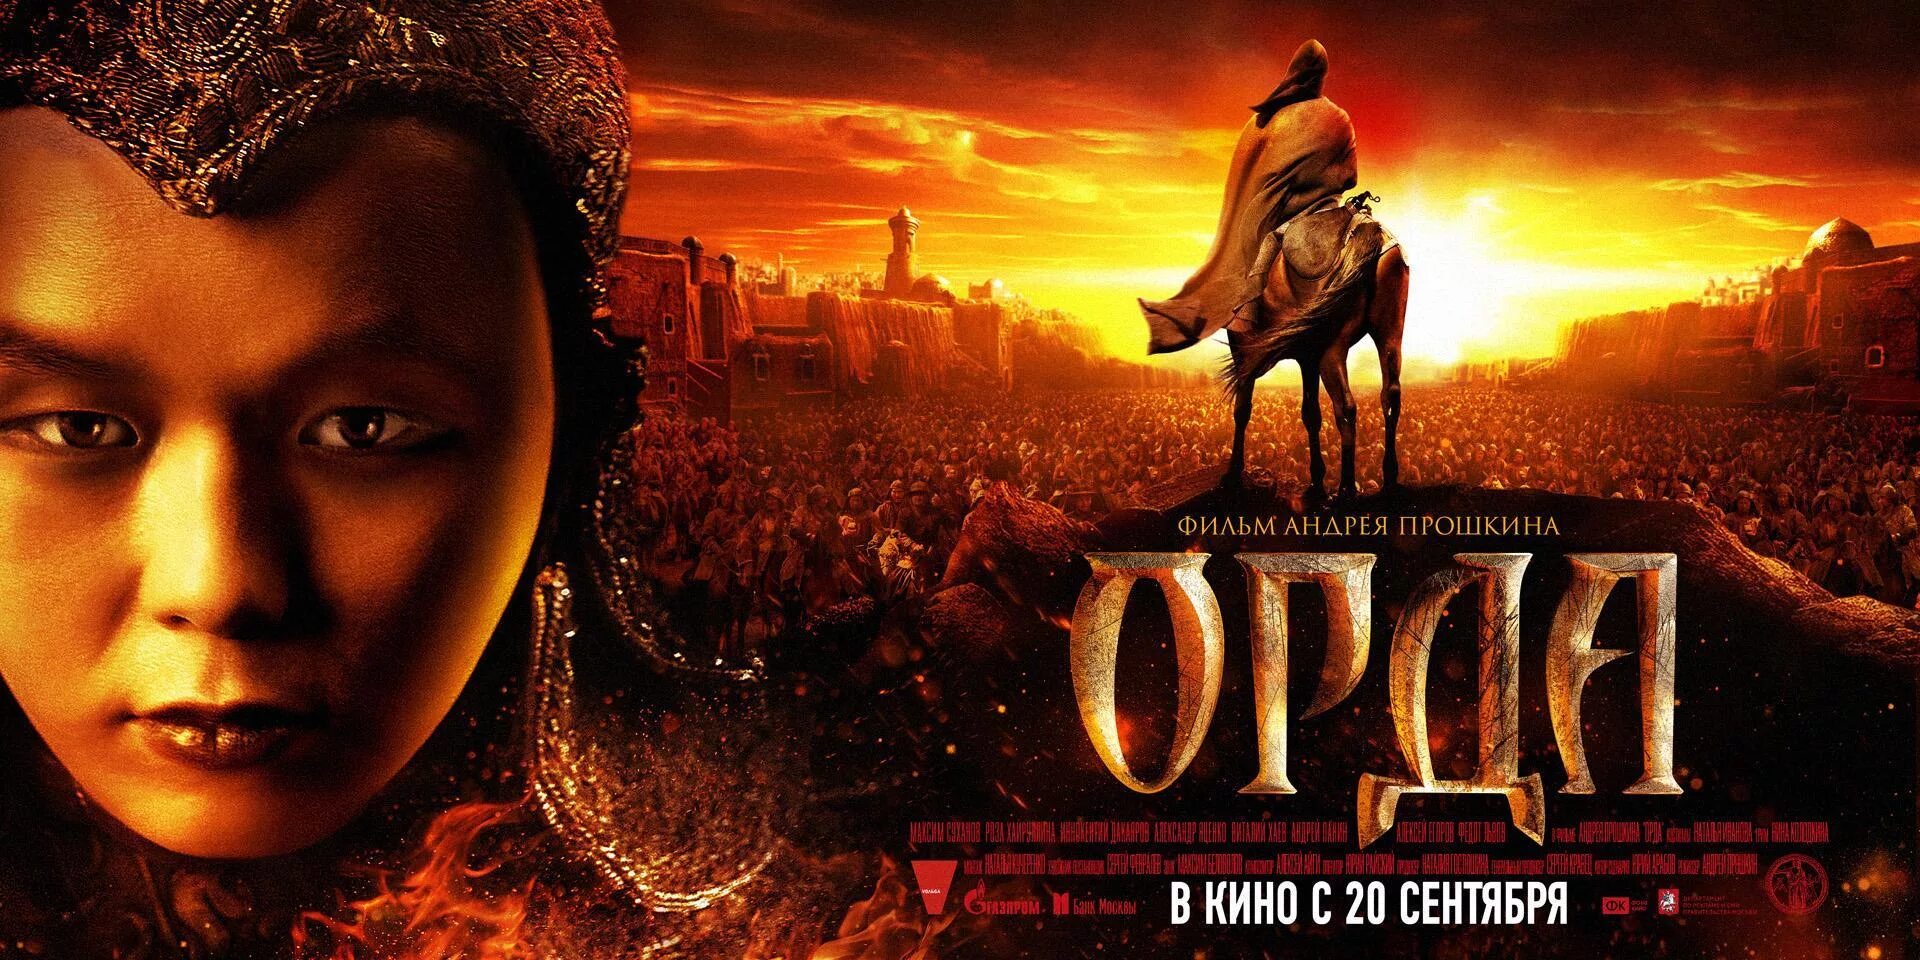 Орда (Прошкин, 2011).